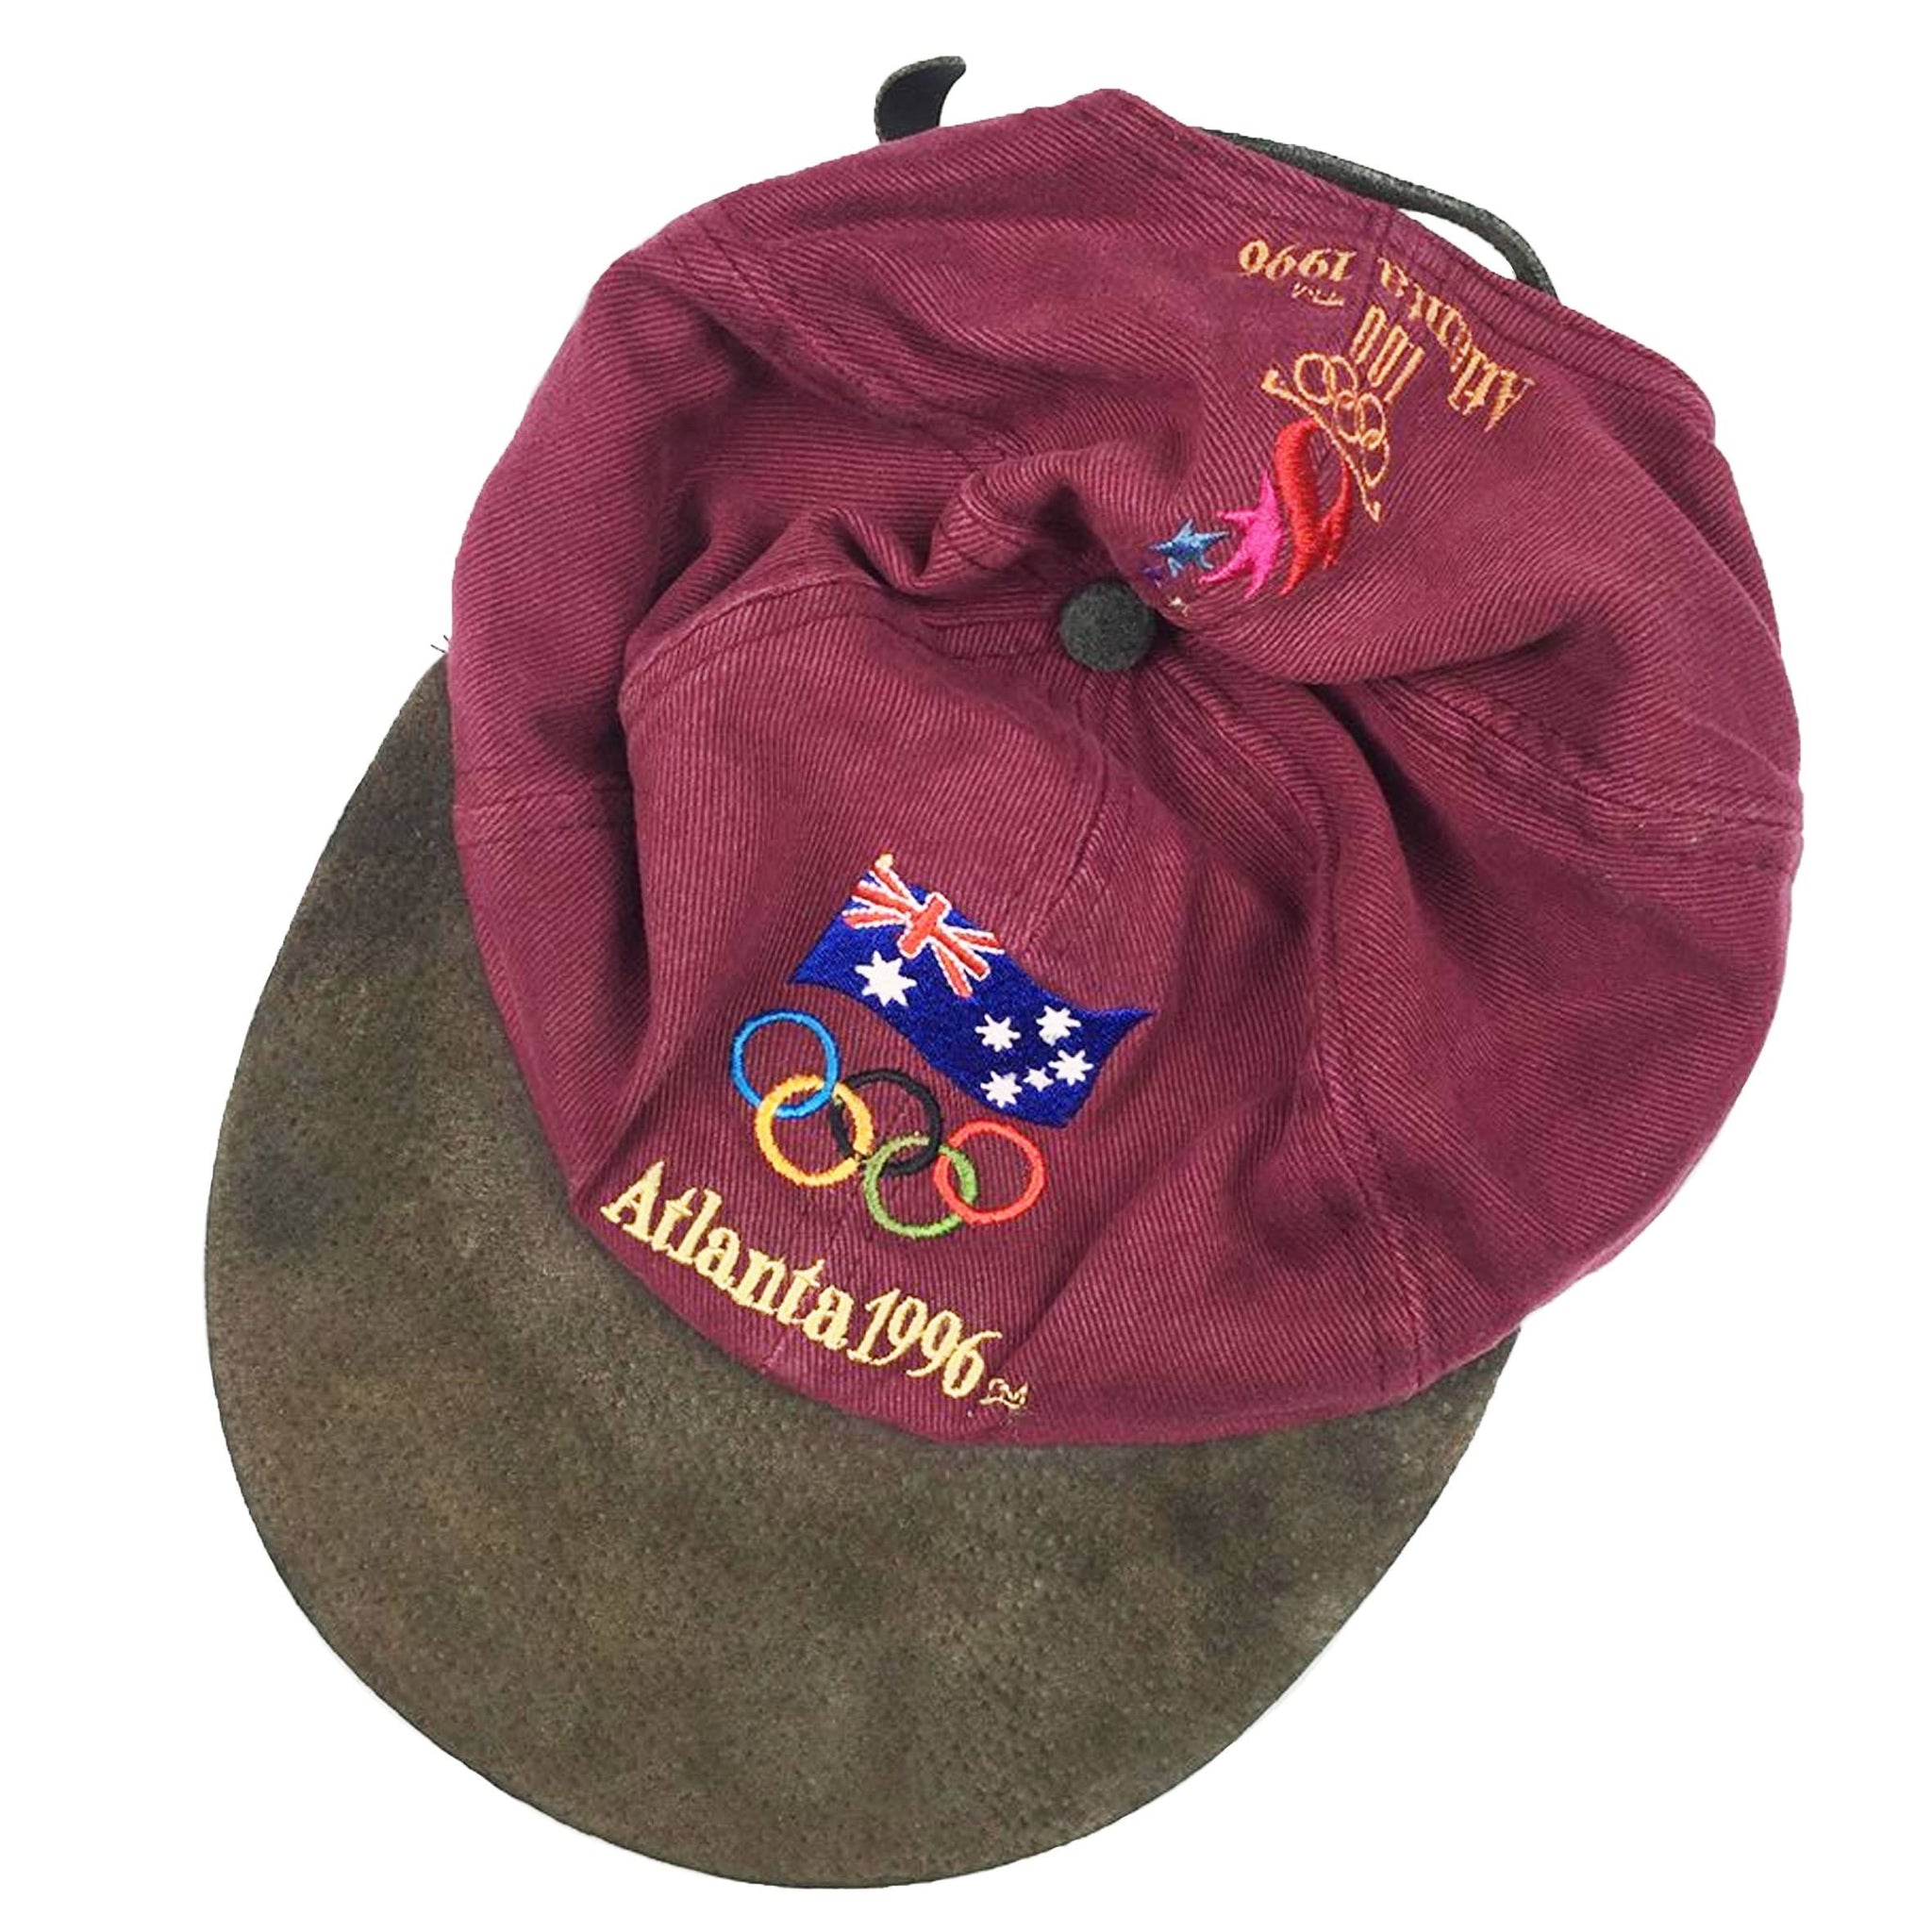 Vintage Atlanta 1996 Olympics Hat (Australia)